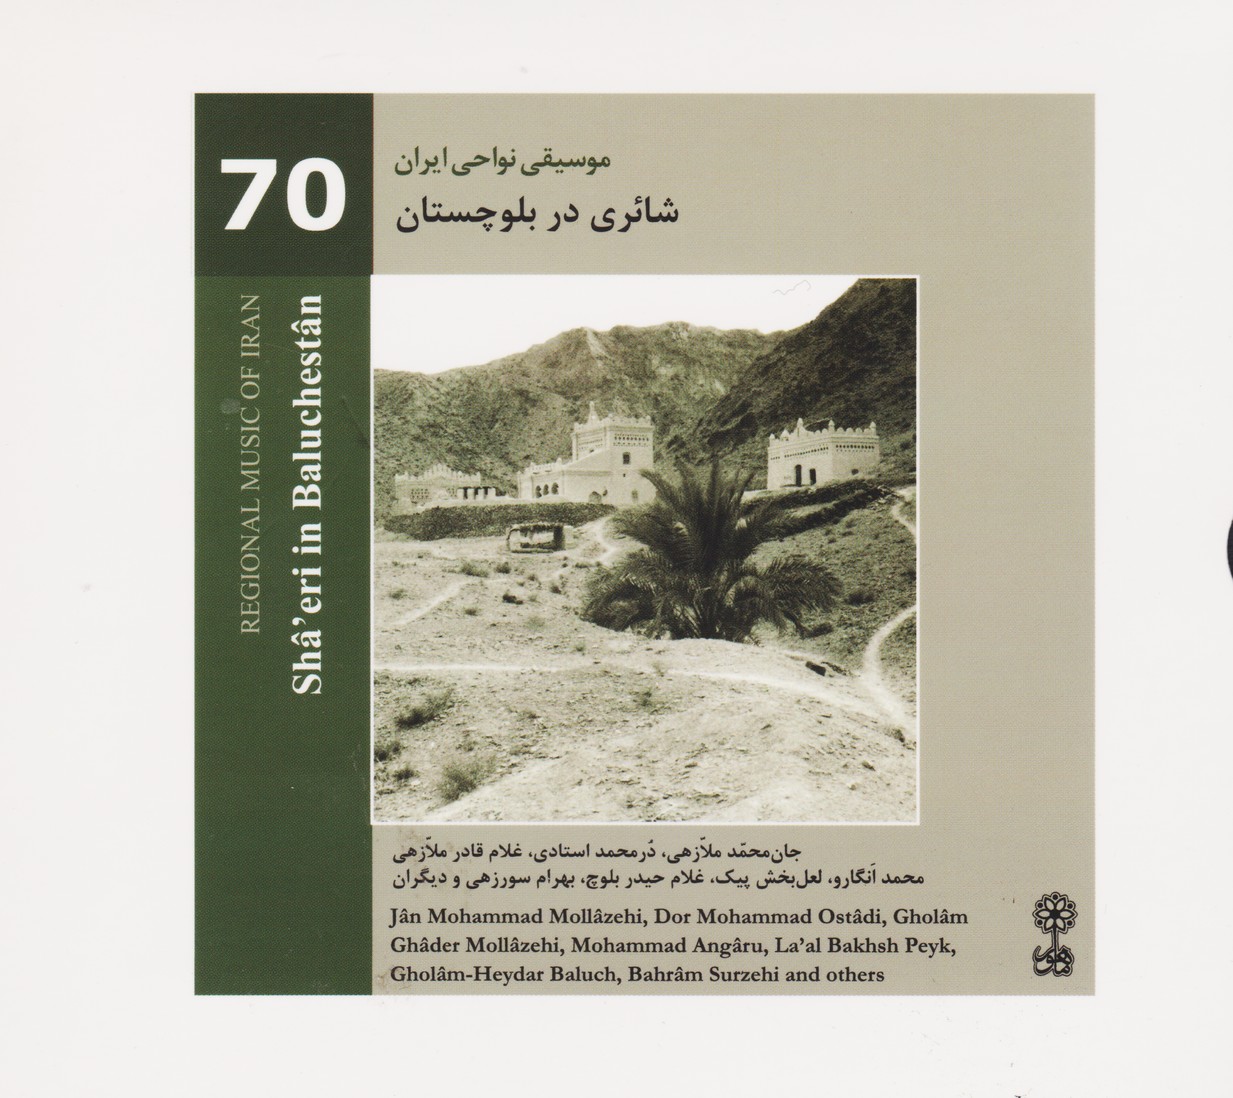 موسیقی نواحی ایران 70: شائری در بلوچستان